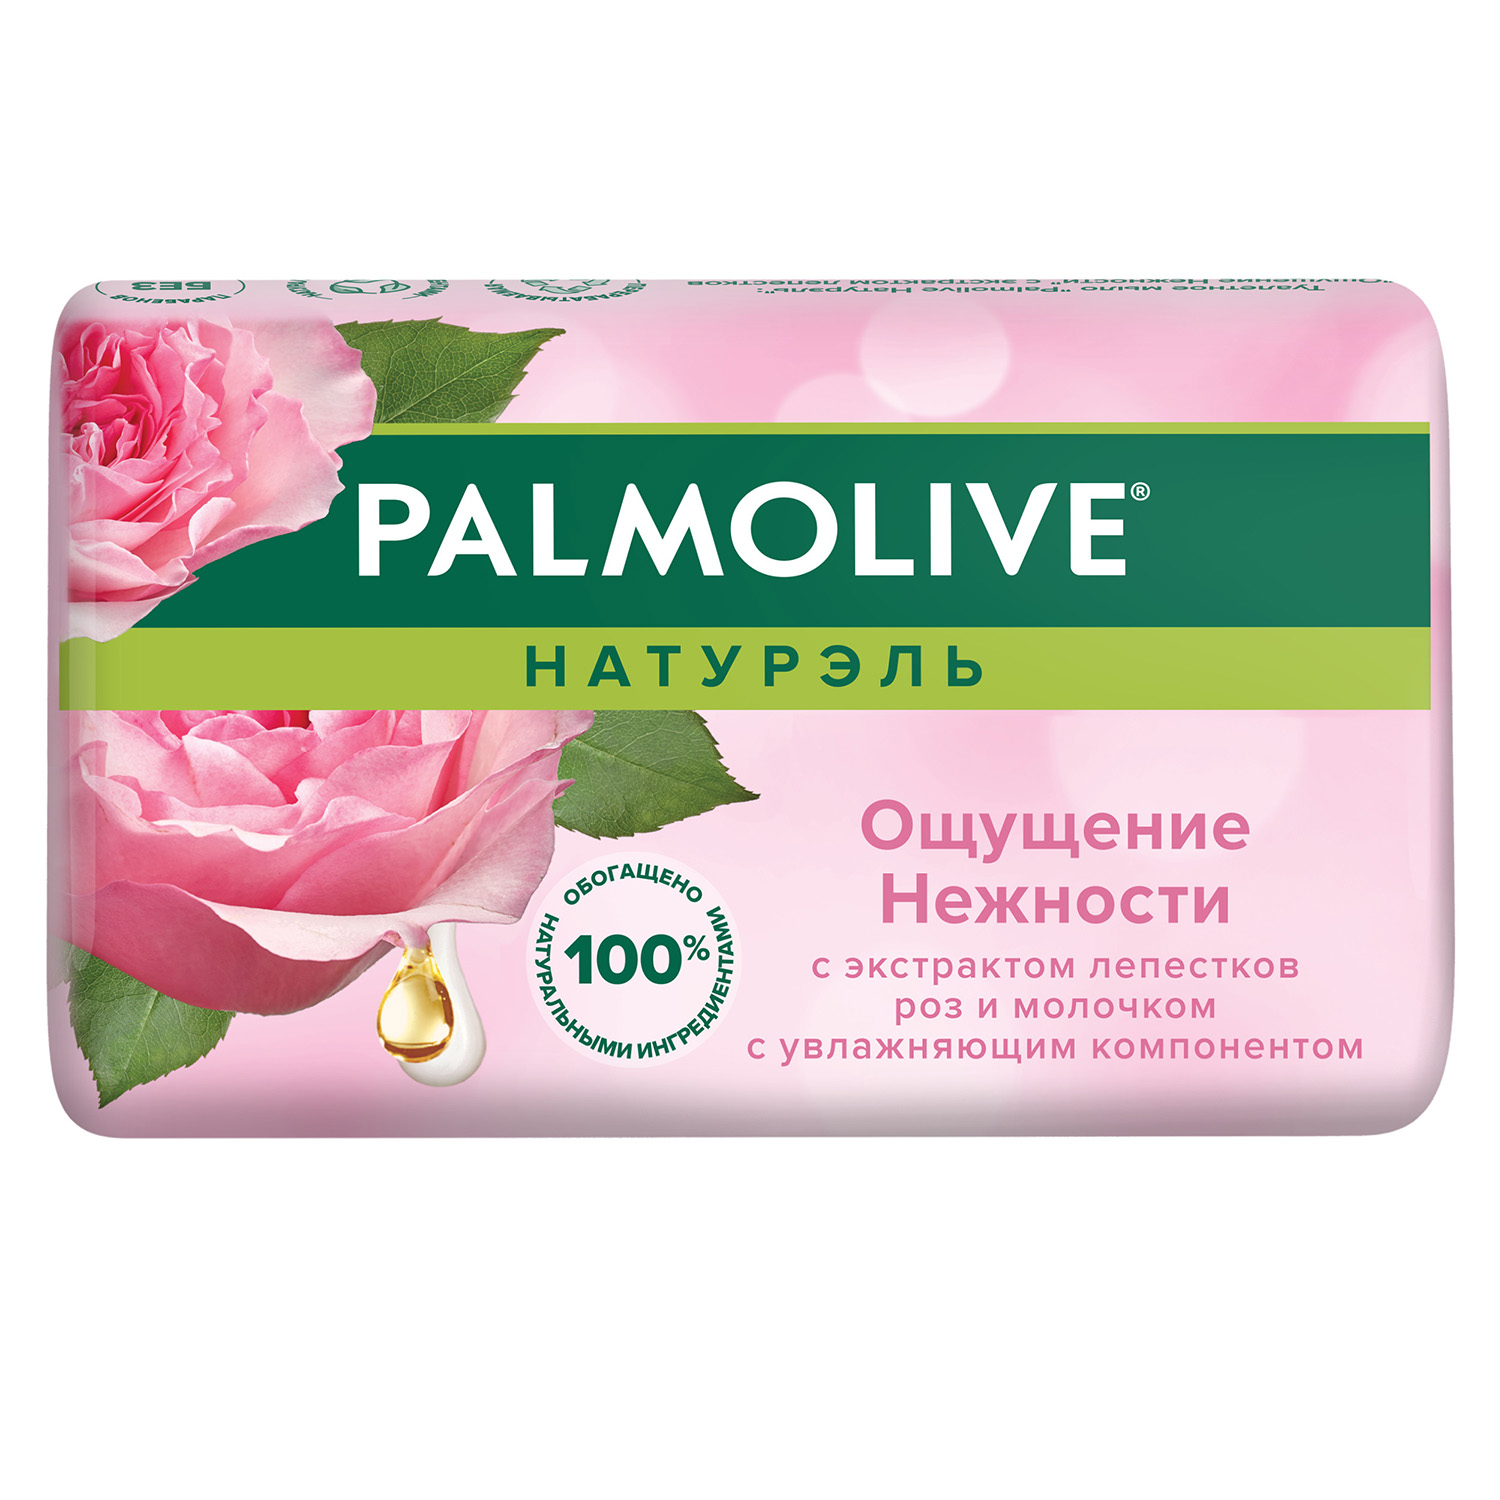 Мыло Palmolive Натурэль Ощущение нежности С экстрактом лепестков роз и молочком 90 г, размер 9x5,5x3 см FTR22534 - фото 2